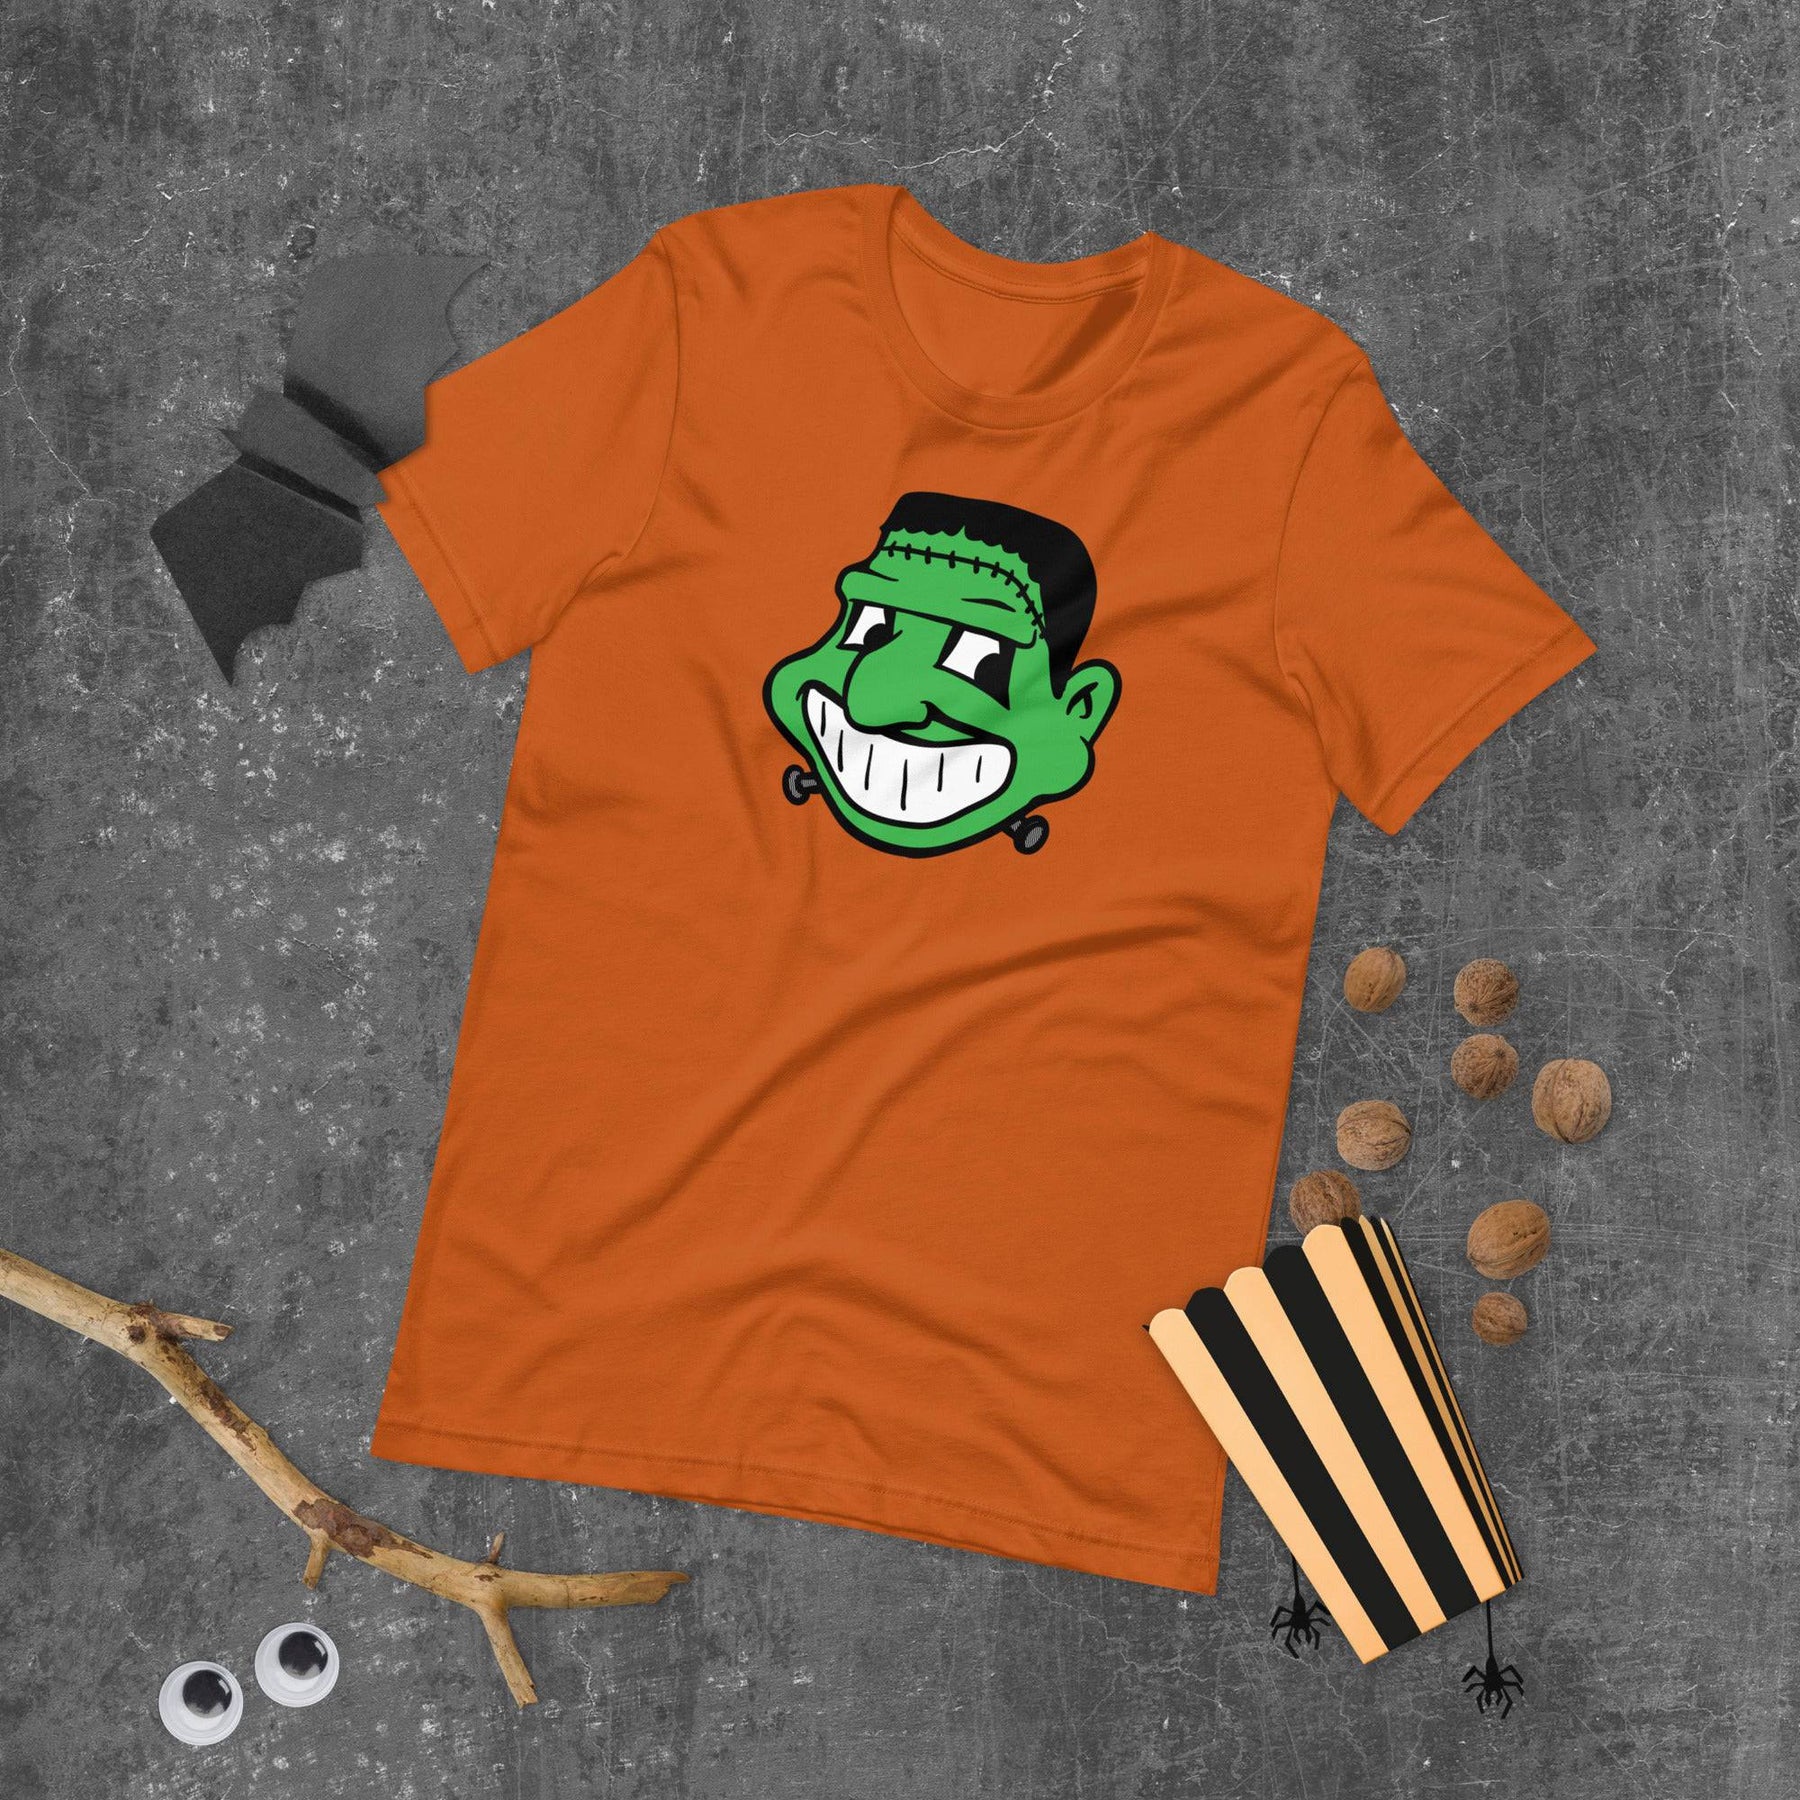 Cleveland - Halloween Frankenhoo t-shirt, Shirts & Tops, WeBleedOhio, WeBleedOhio